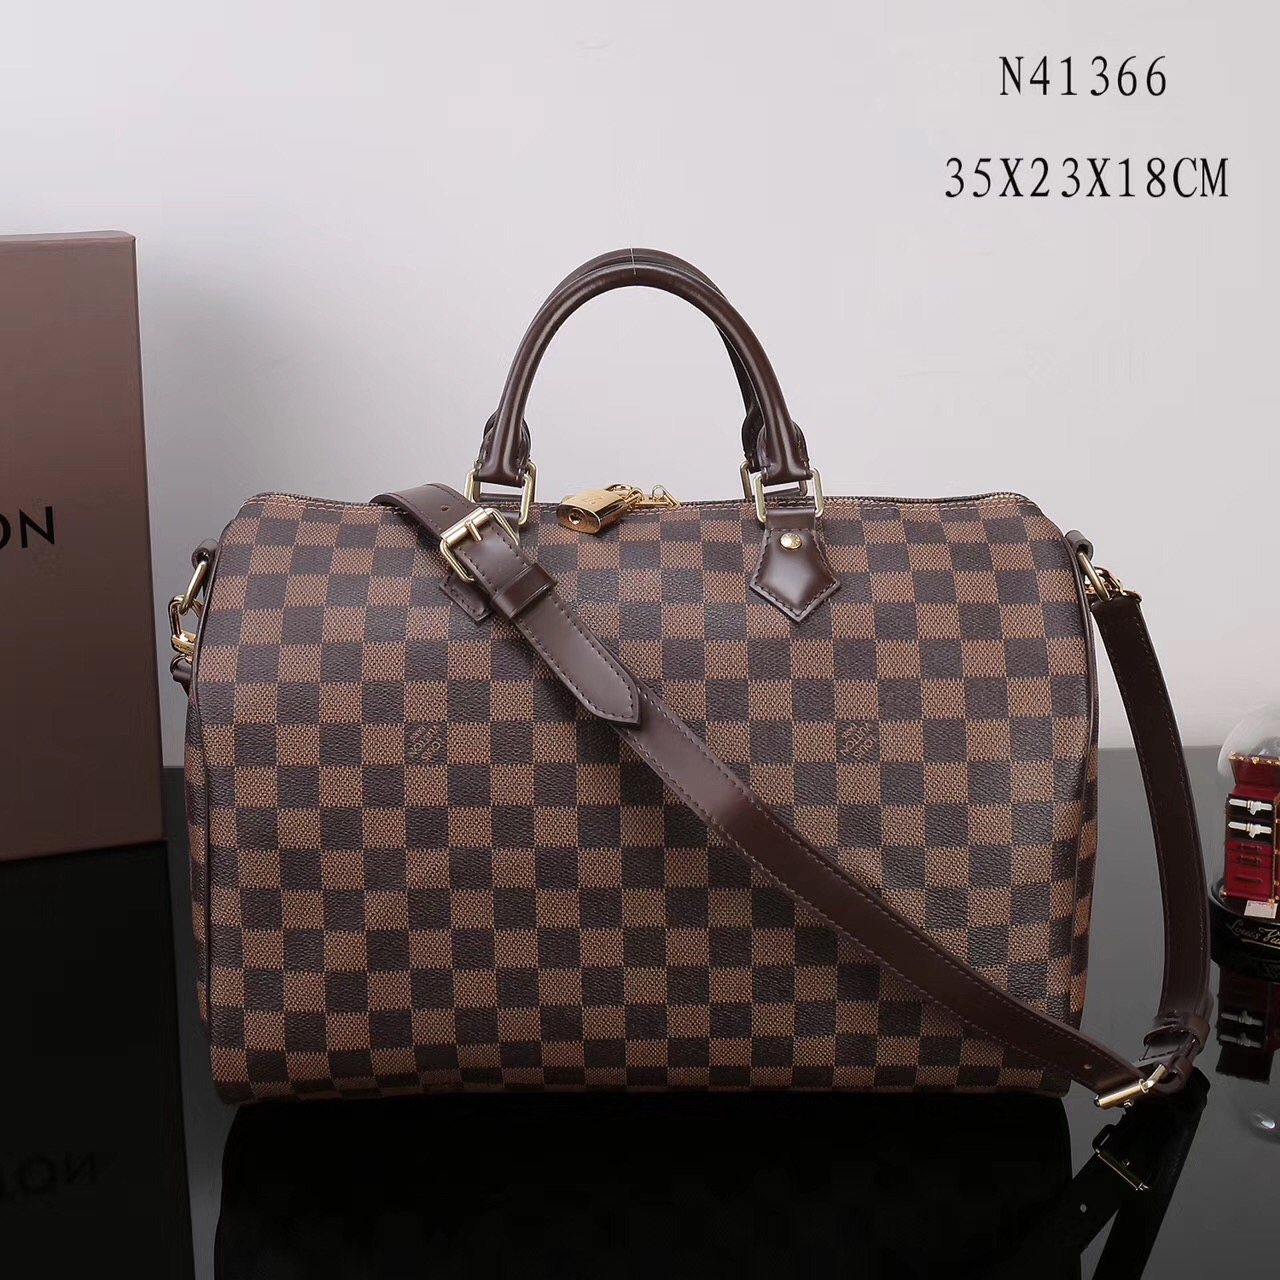 LV Louis Vuitton Speedy 35 Damier bags N41366 Handbags Brown